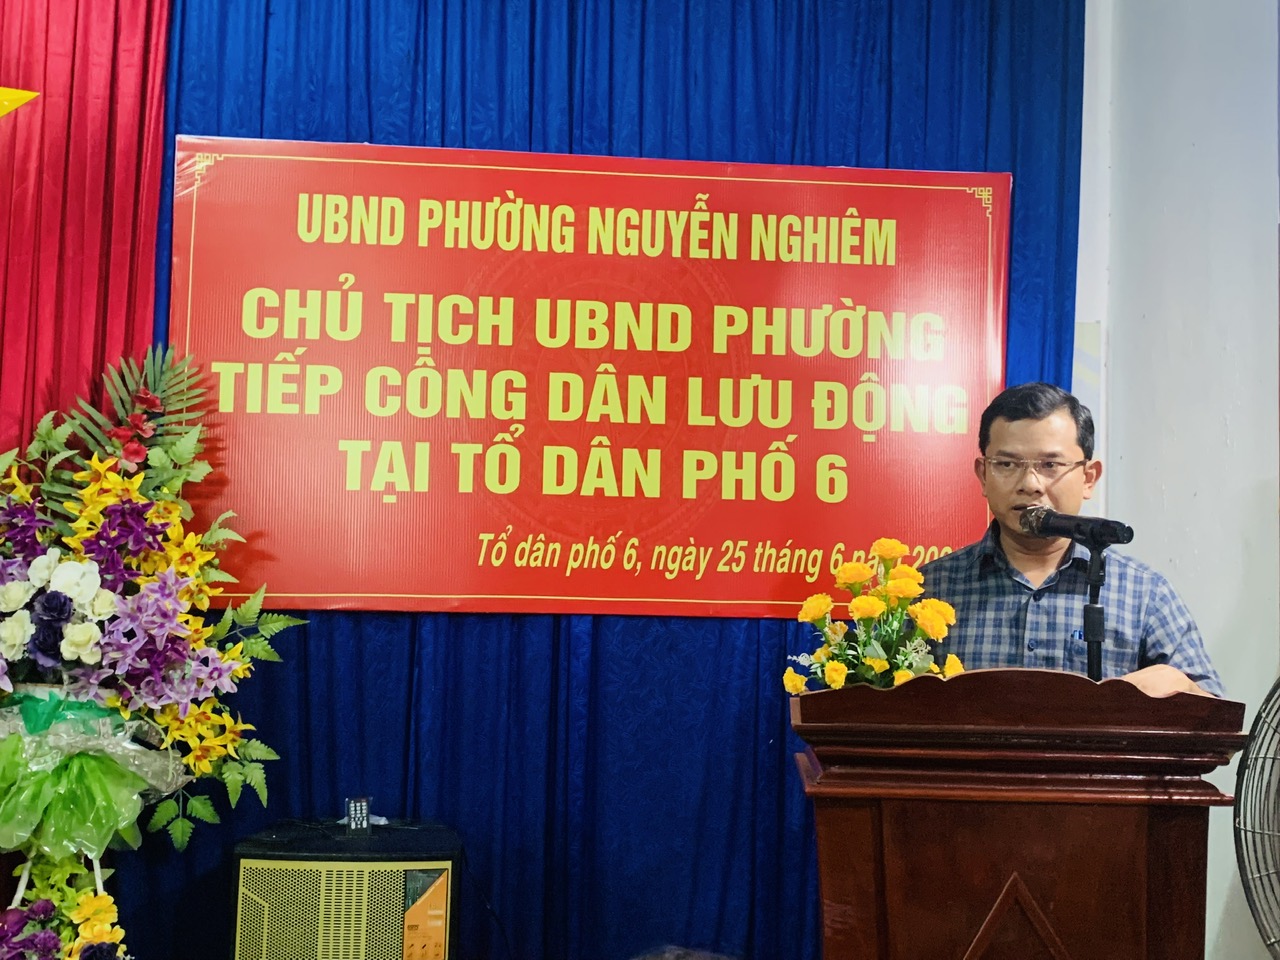 Chủ tịch UBND Phường Nguyễn Nghiêm tiếp công dân lưu động tại TDP6